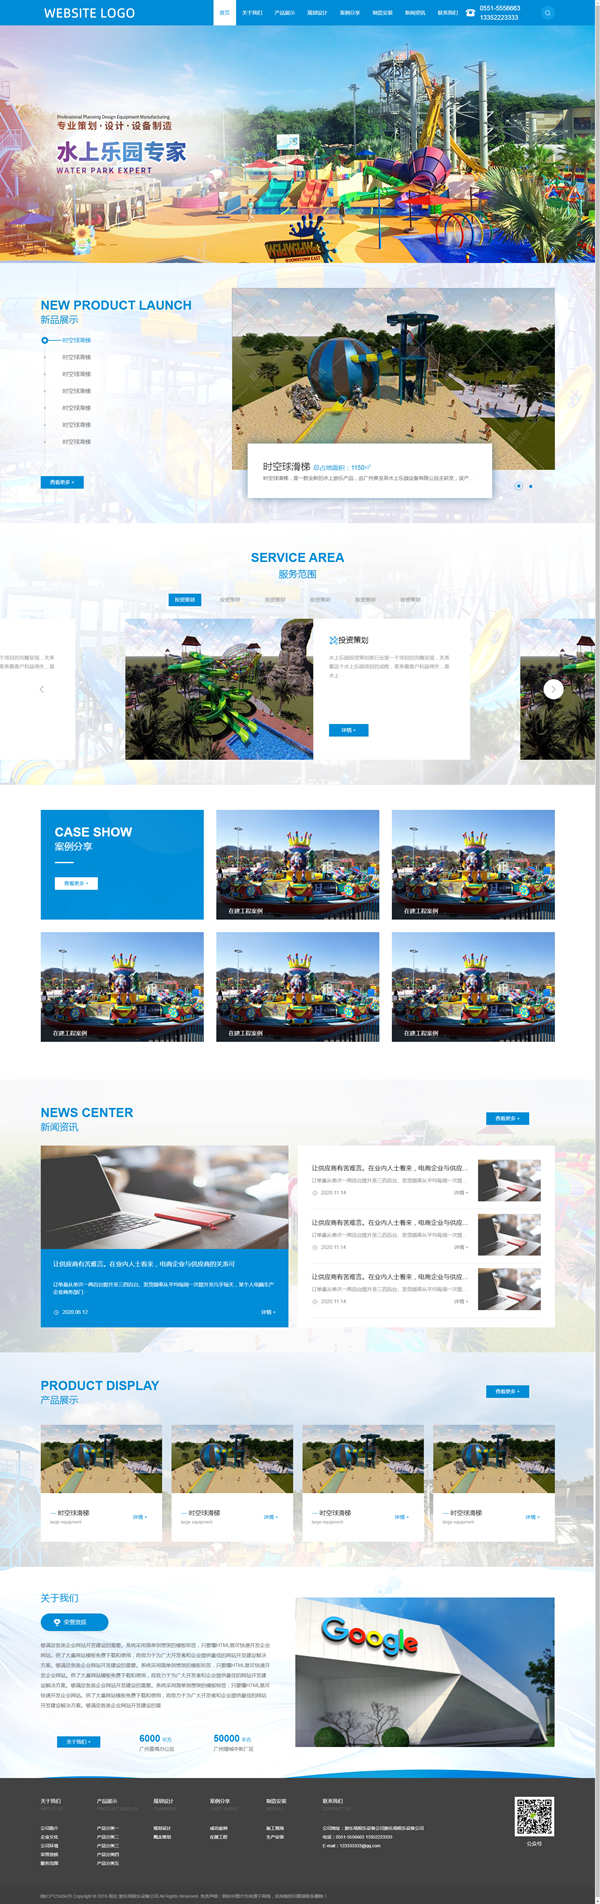 响应式蓝色大气乐园玩具游乐场娱乐设备公司网站PbootCMS模板